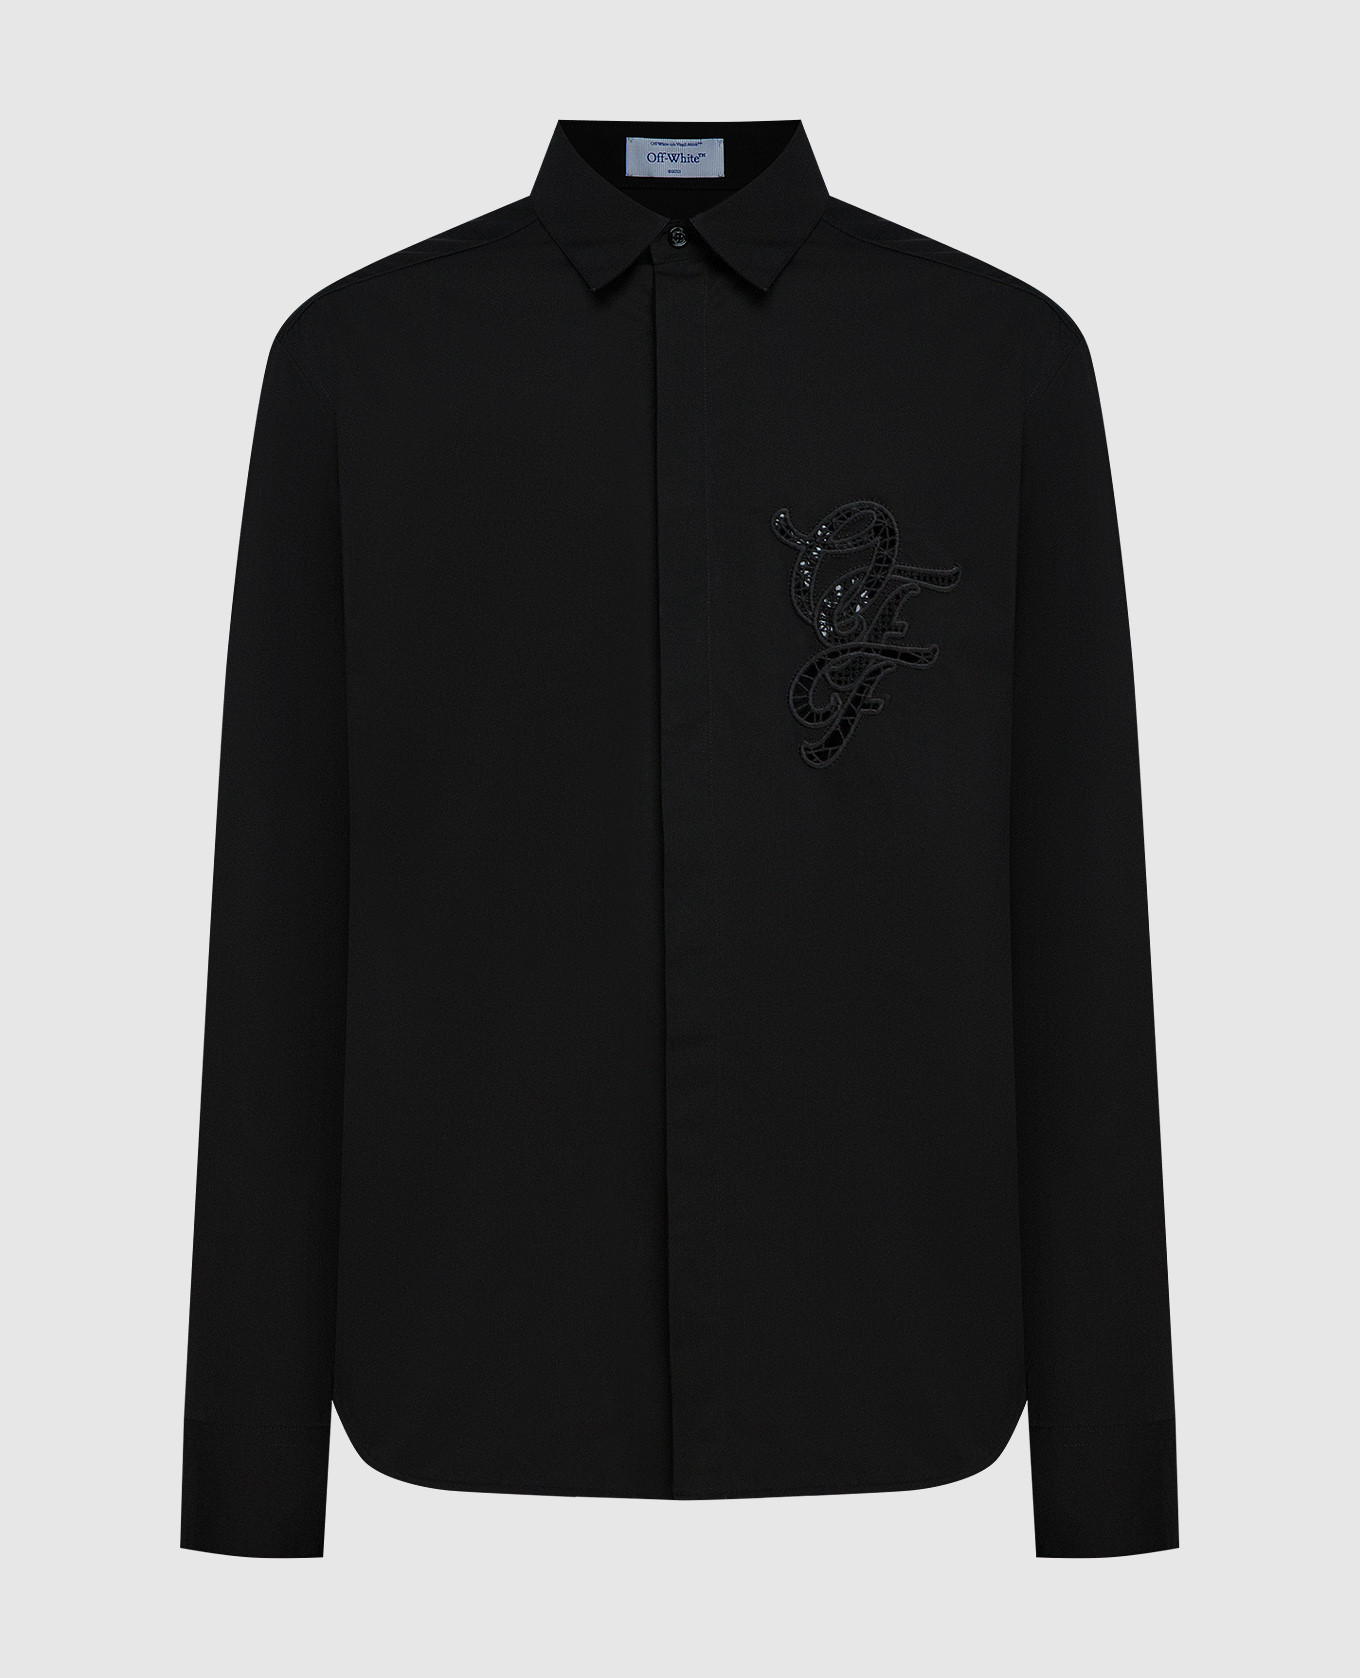 Черная рубашка с ажурной вышивкой логотипа